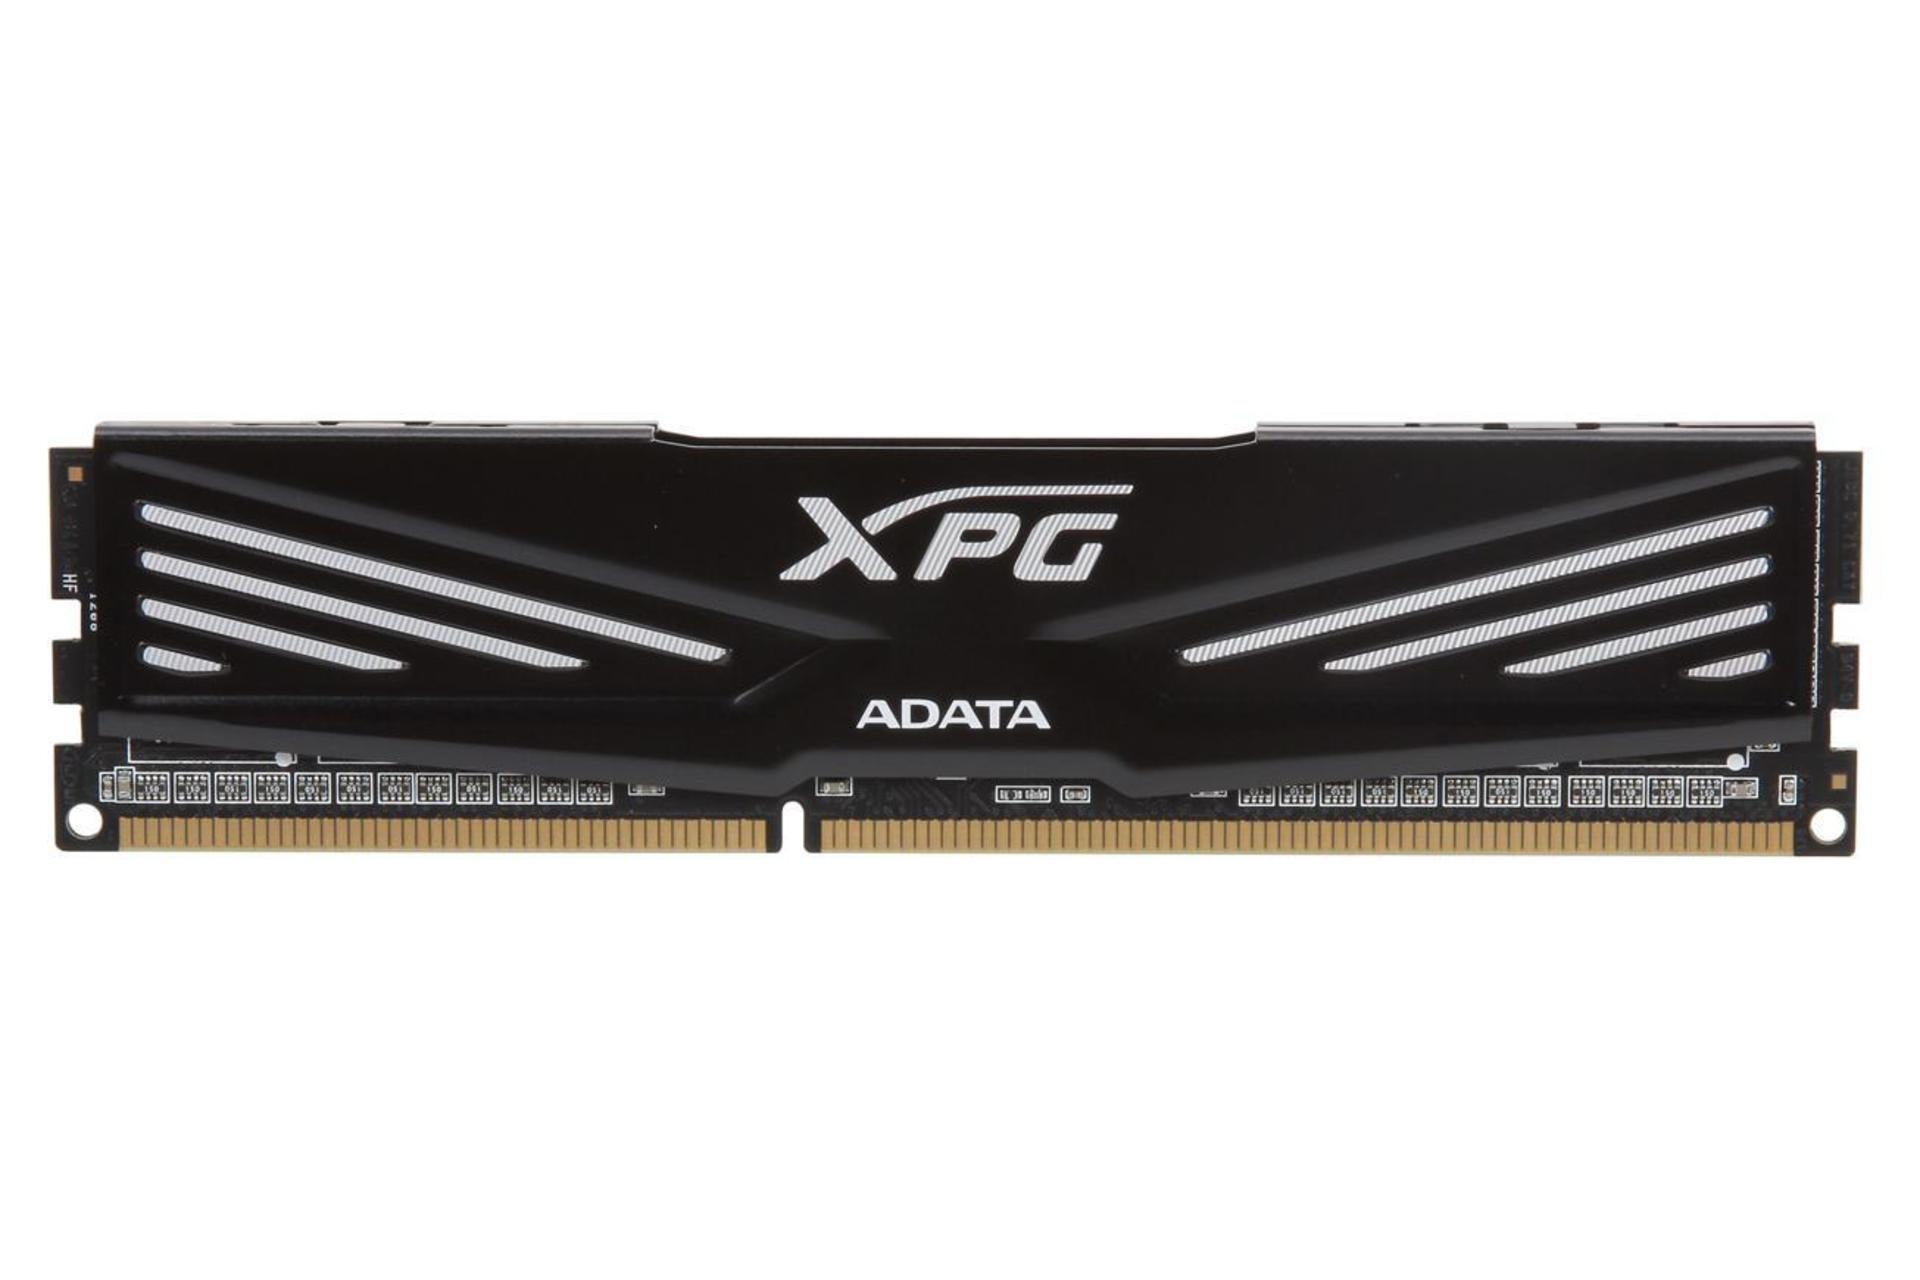 رم ای دیتا ADATA XPG V1.0 ظرفیت 4 گیگابایت از نوع DDR3-1600 CL9